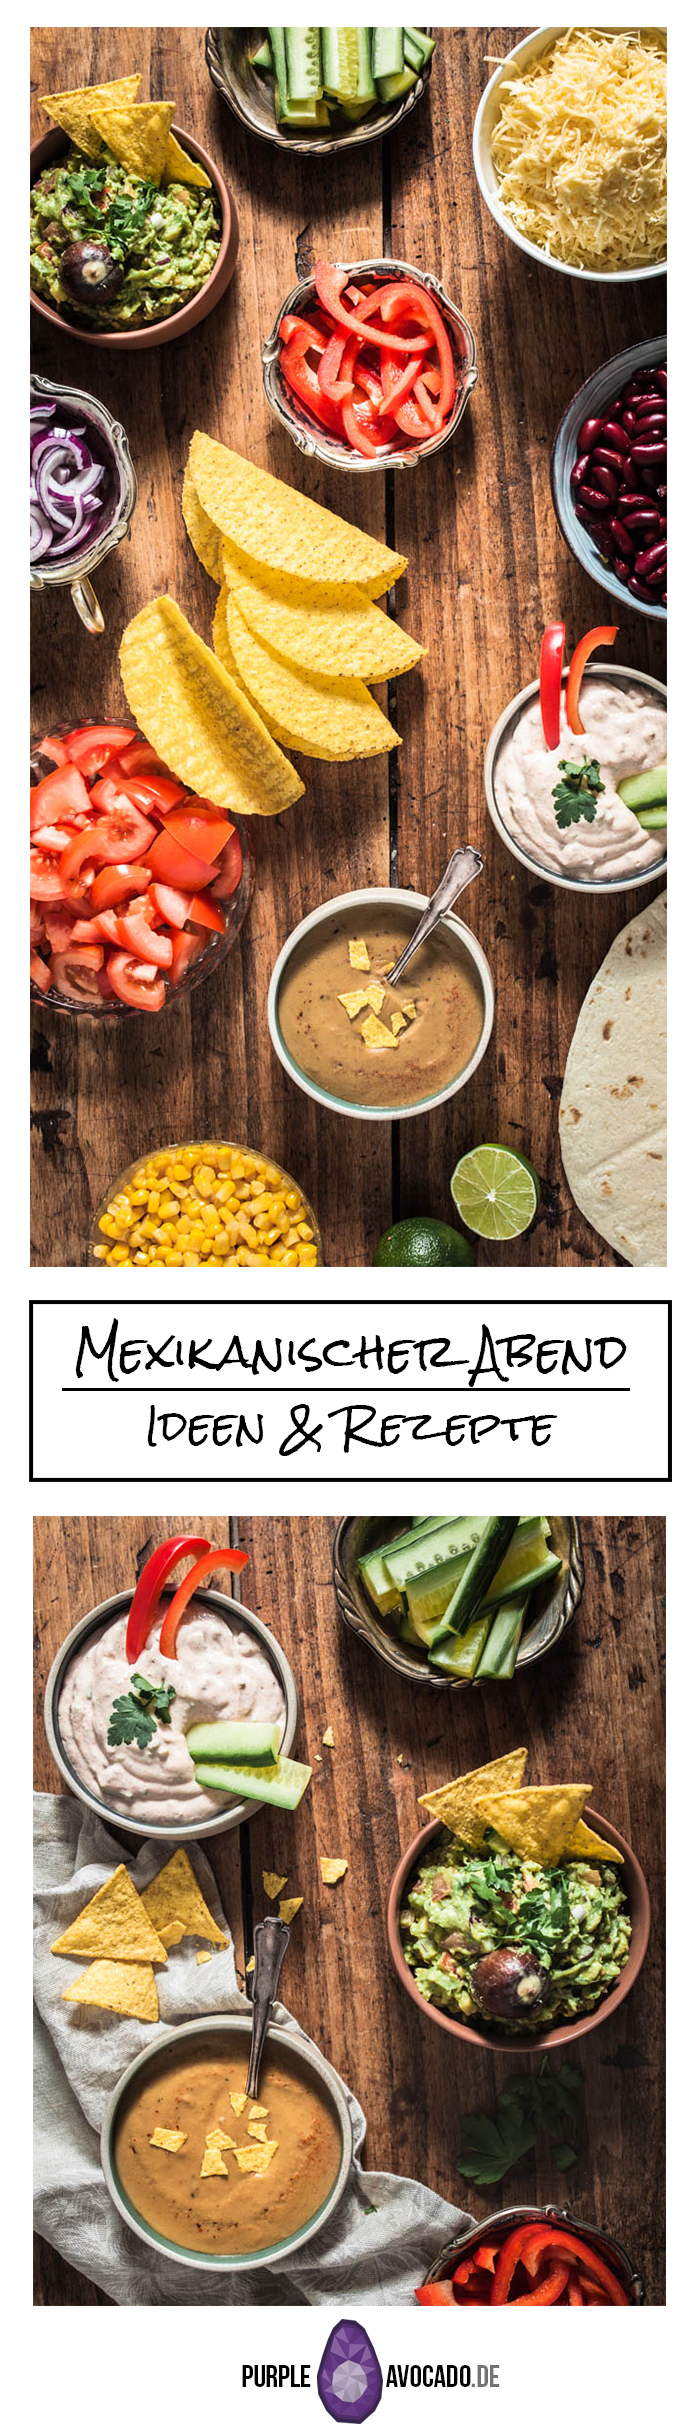 Rezepte und Inspiration für einen veganen / vegetarischen mexikanischen Abend mit Tortillas, Tacos, Gemüse und Rezepten für verschiedene Dips, sowie Blumenkohl Wings und pulled BBQ jackfrucht